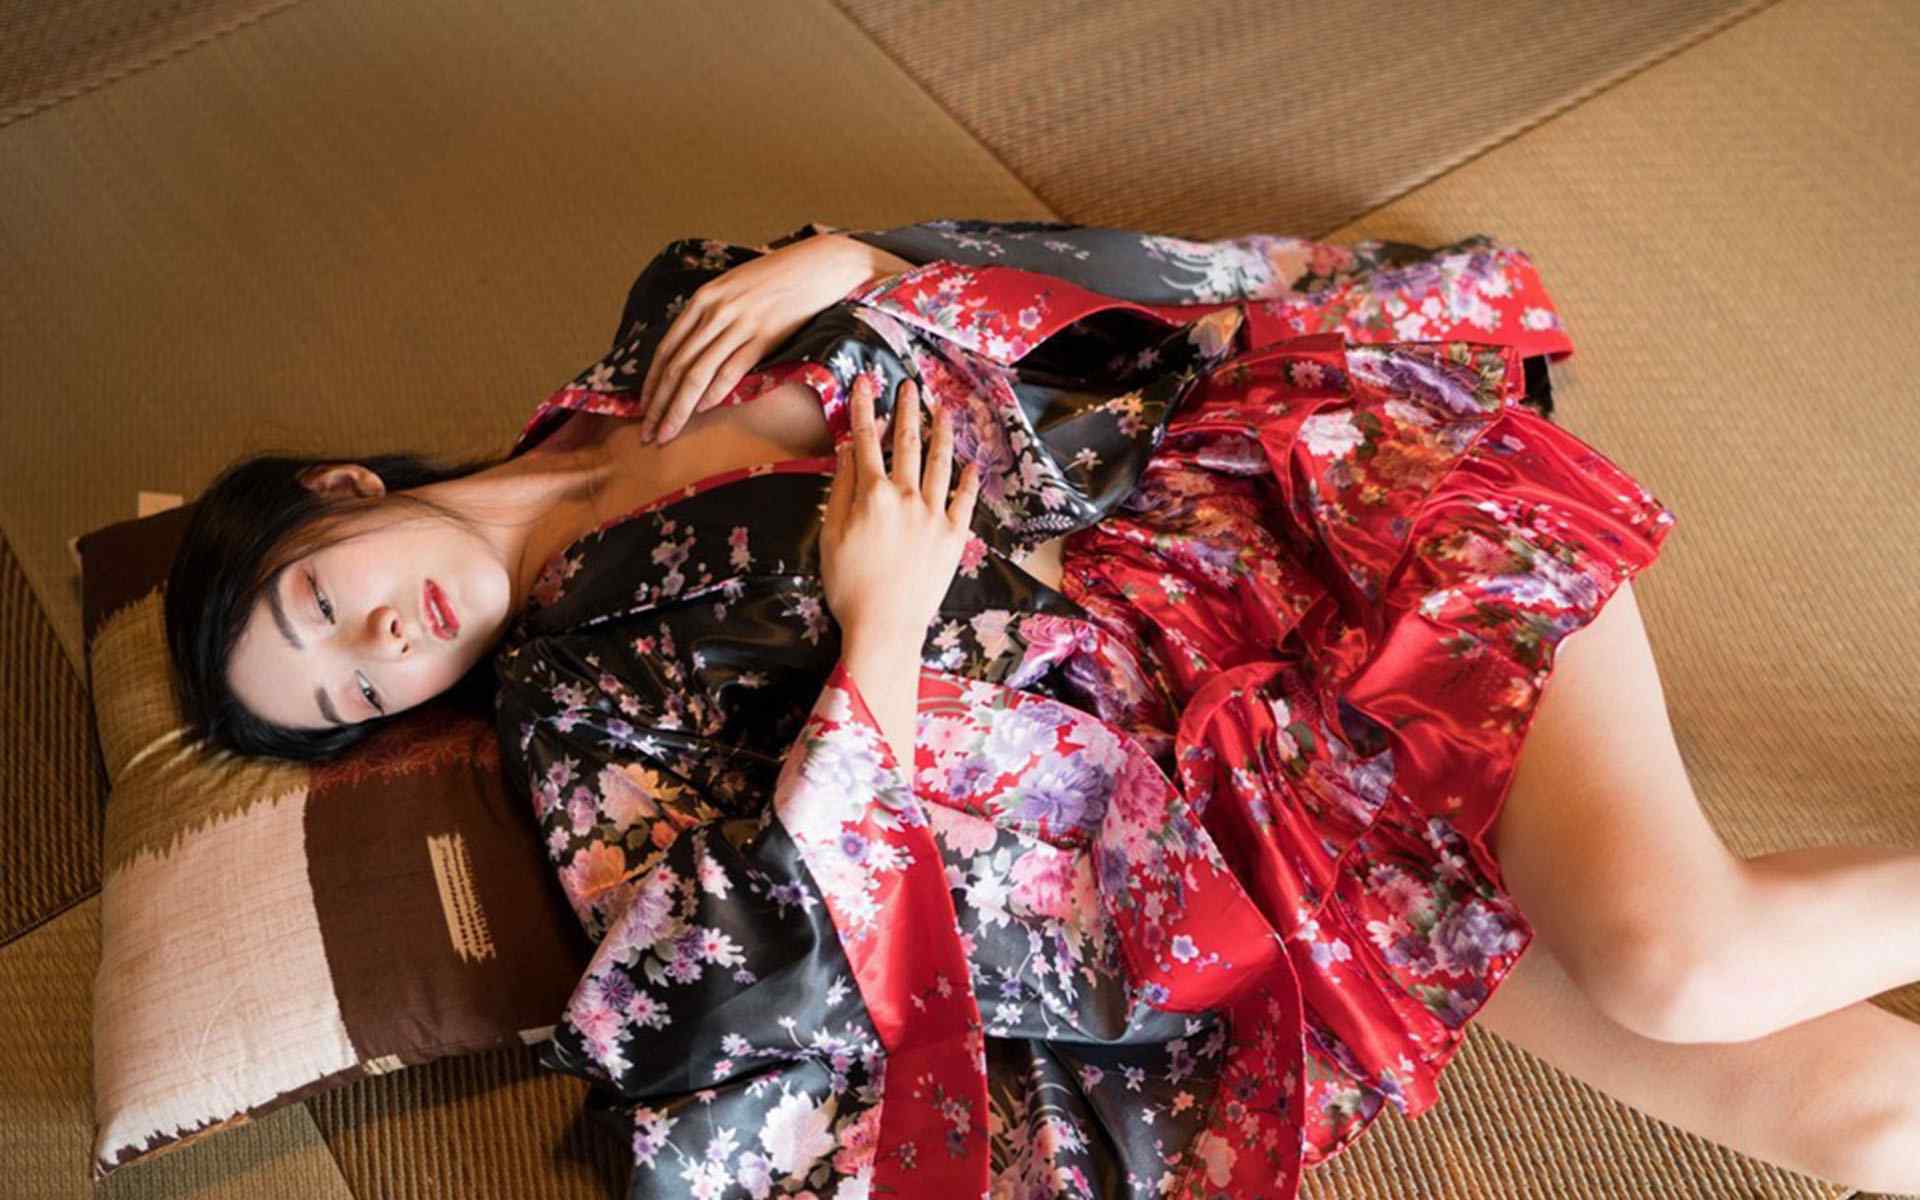 日本美女壁纸性感和服美女妩媚高清桌面壁纸性感美腿美女制服艺术摄影极品诱惑